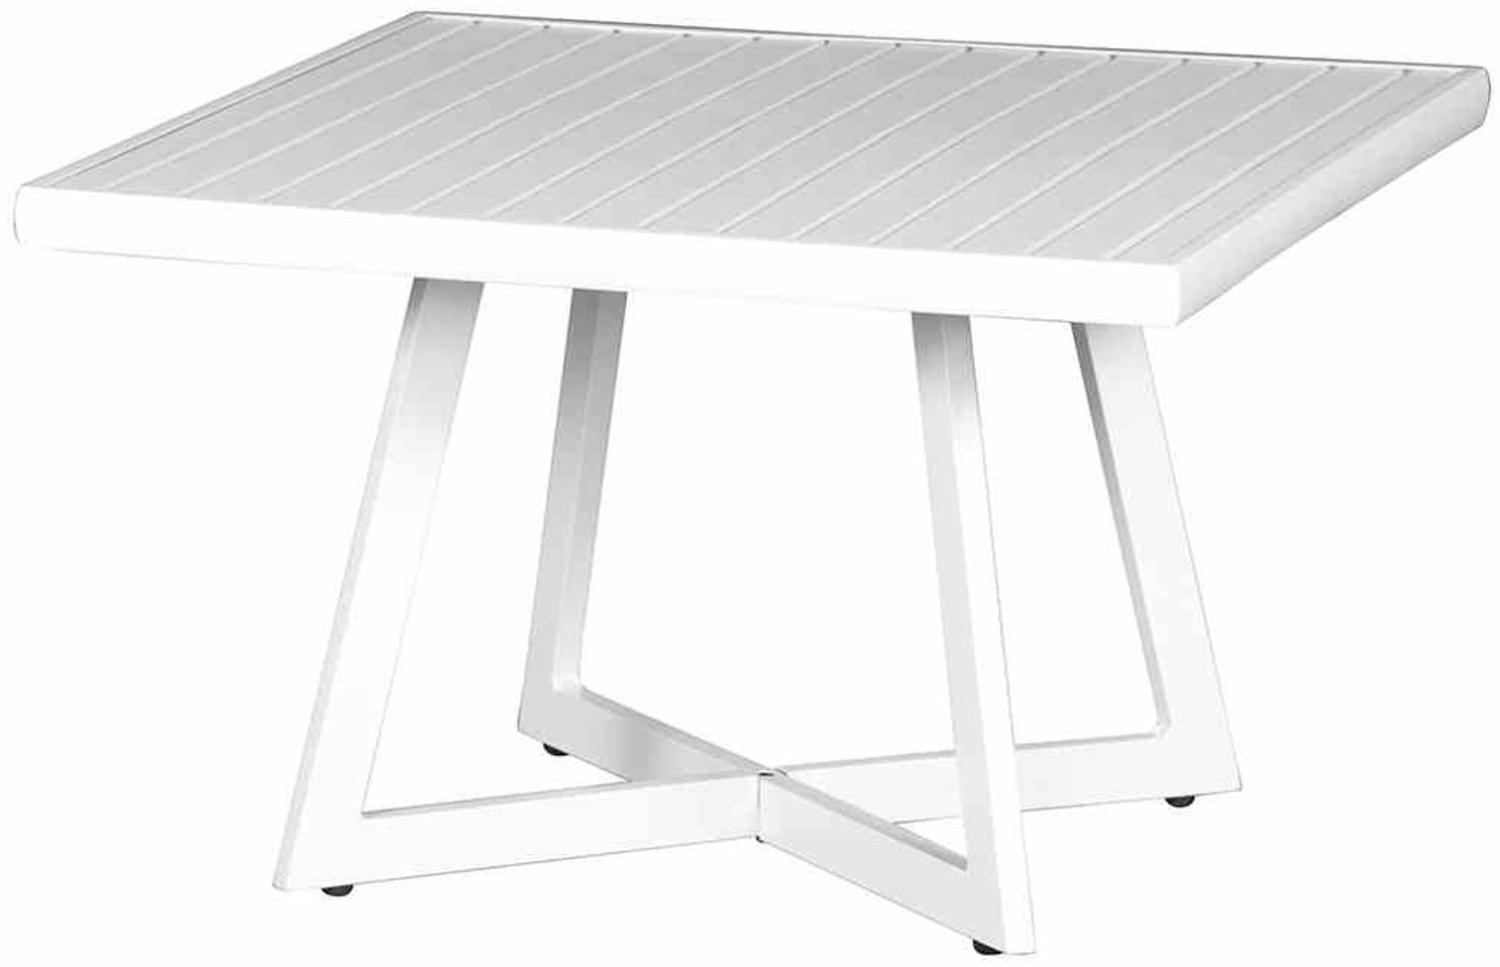 Alexis Lounge Tisch 70x70cm Aluminium matt-weiß Gartentisch Tresentisch Bartisch Bild 1